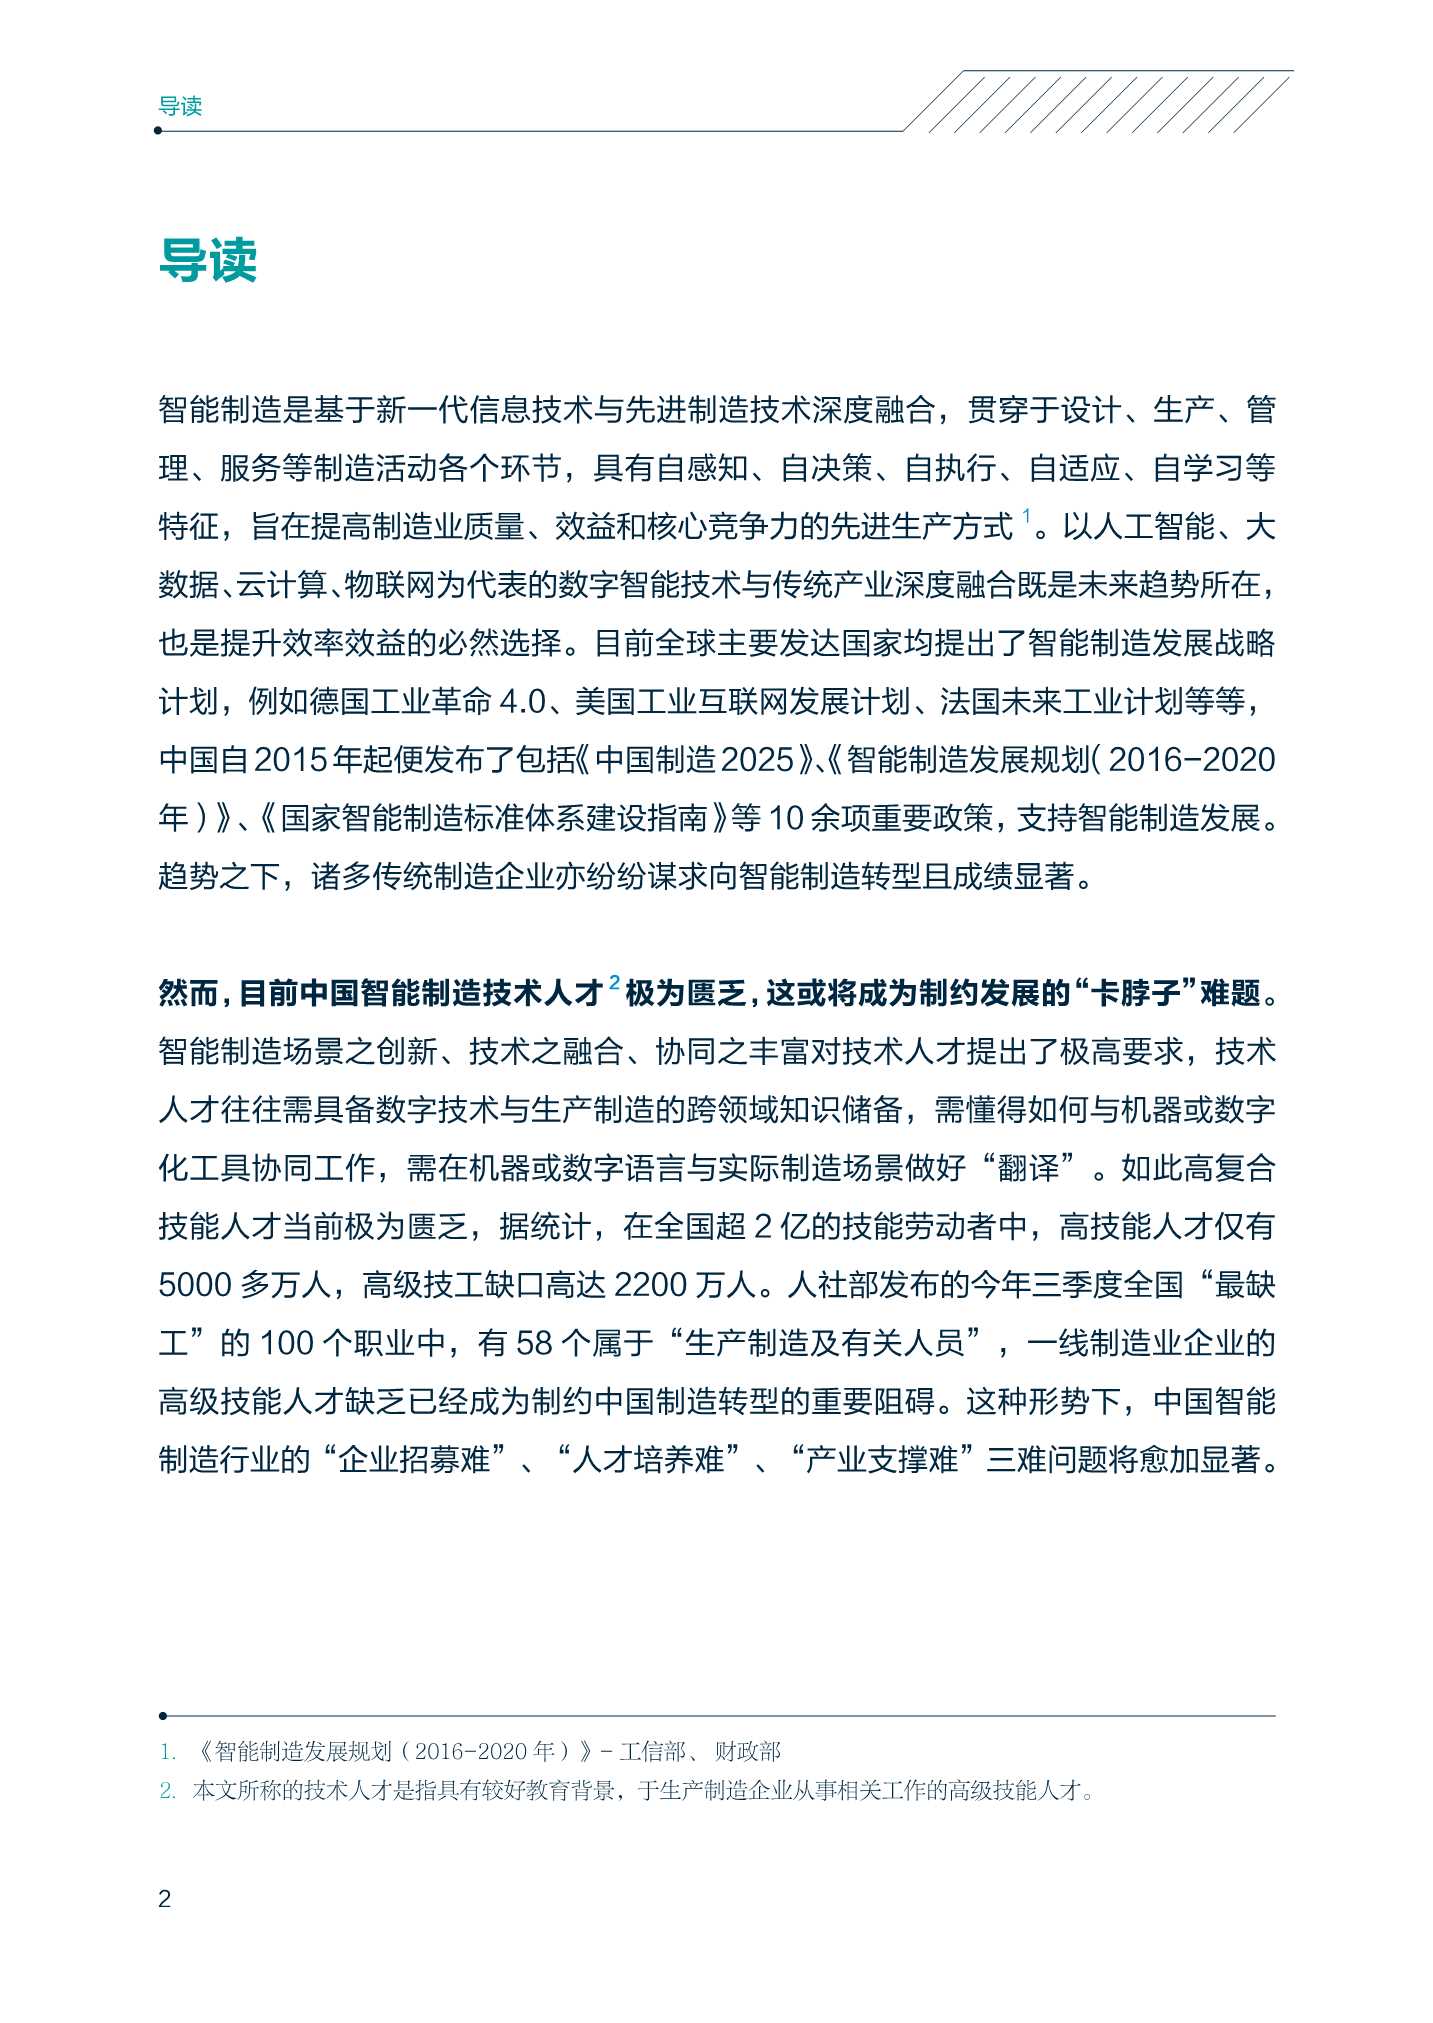 领英&中关村产业研究院-中国智能制造技术人才洞察-2022.01-54页